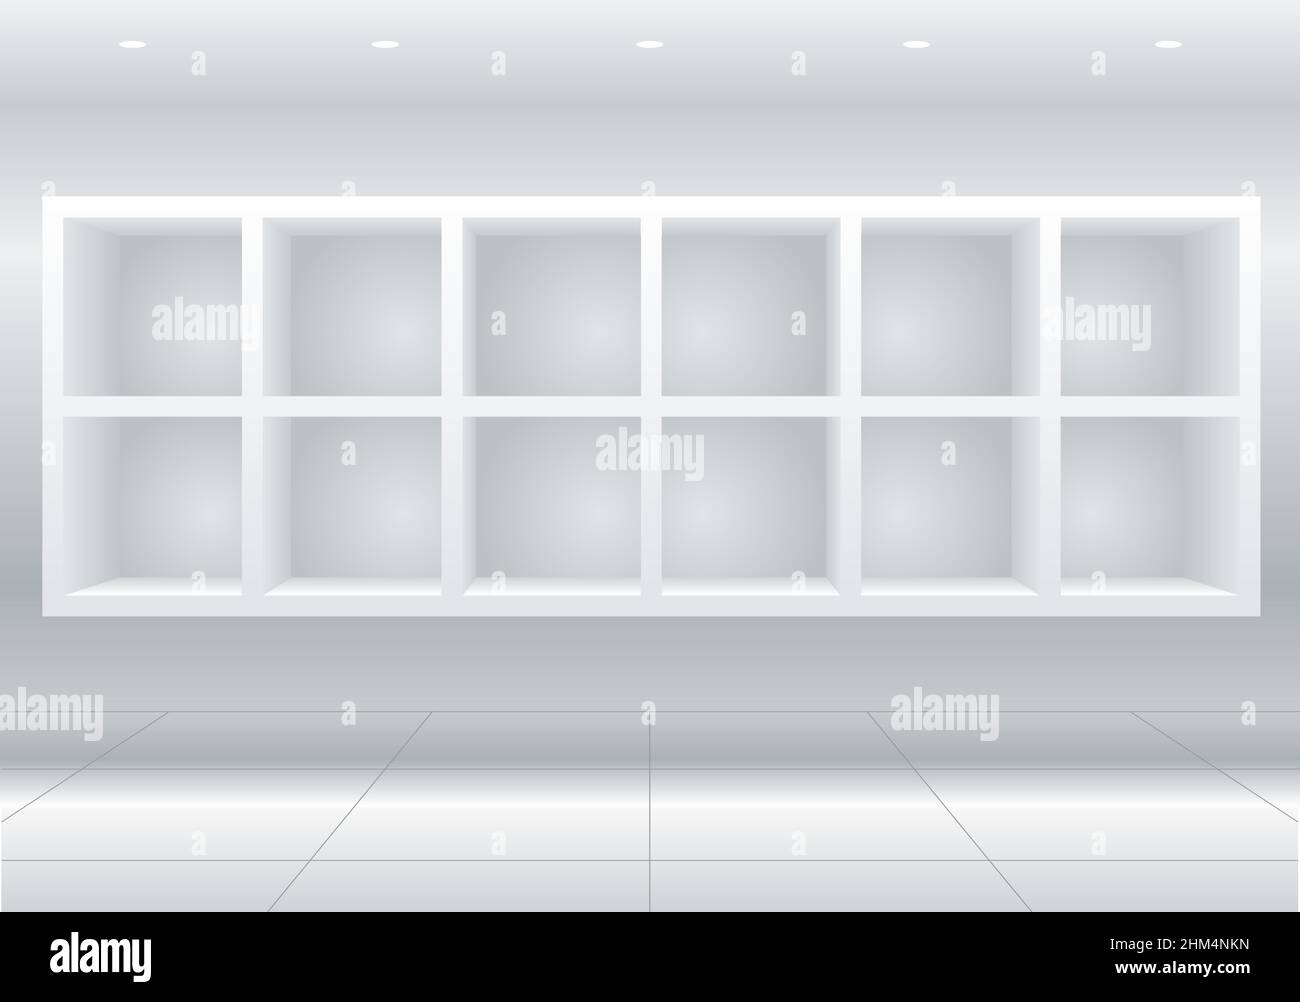 Meubles de cellules blanches ou vitrines pour marchandises, étagères pour marchandises ou bibliothèque Illustration de Vecteur